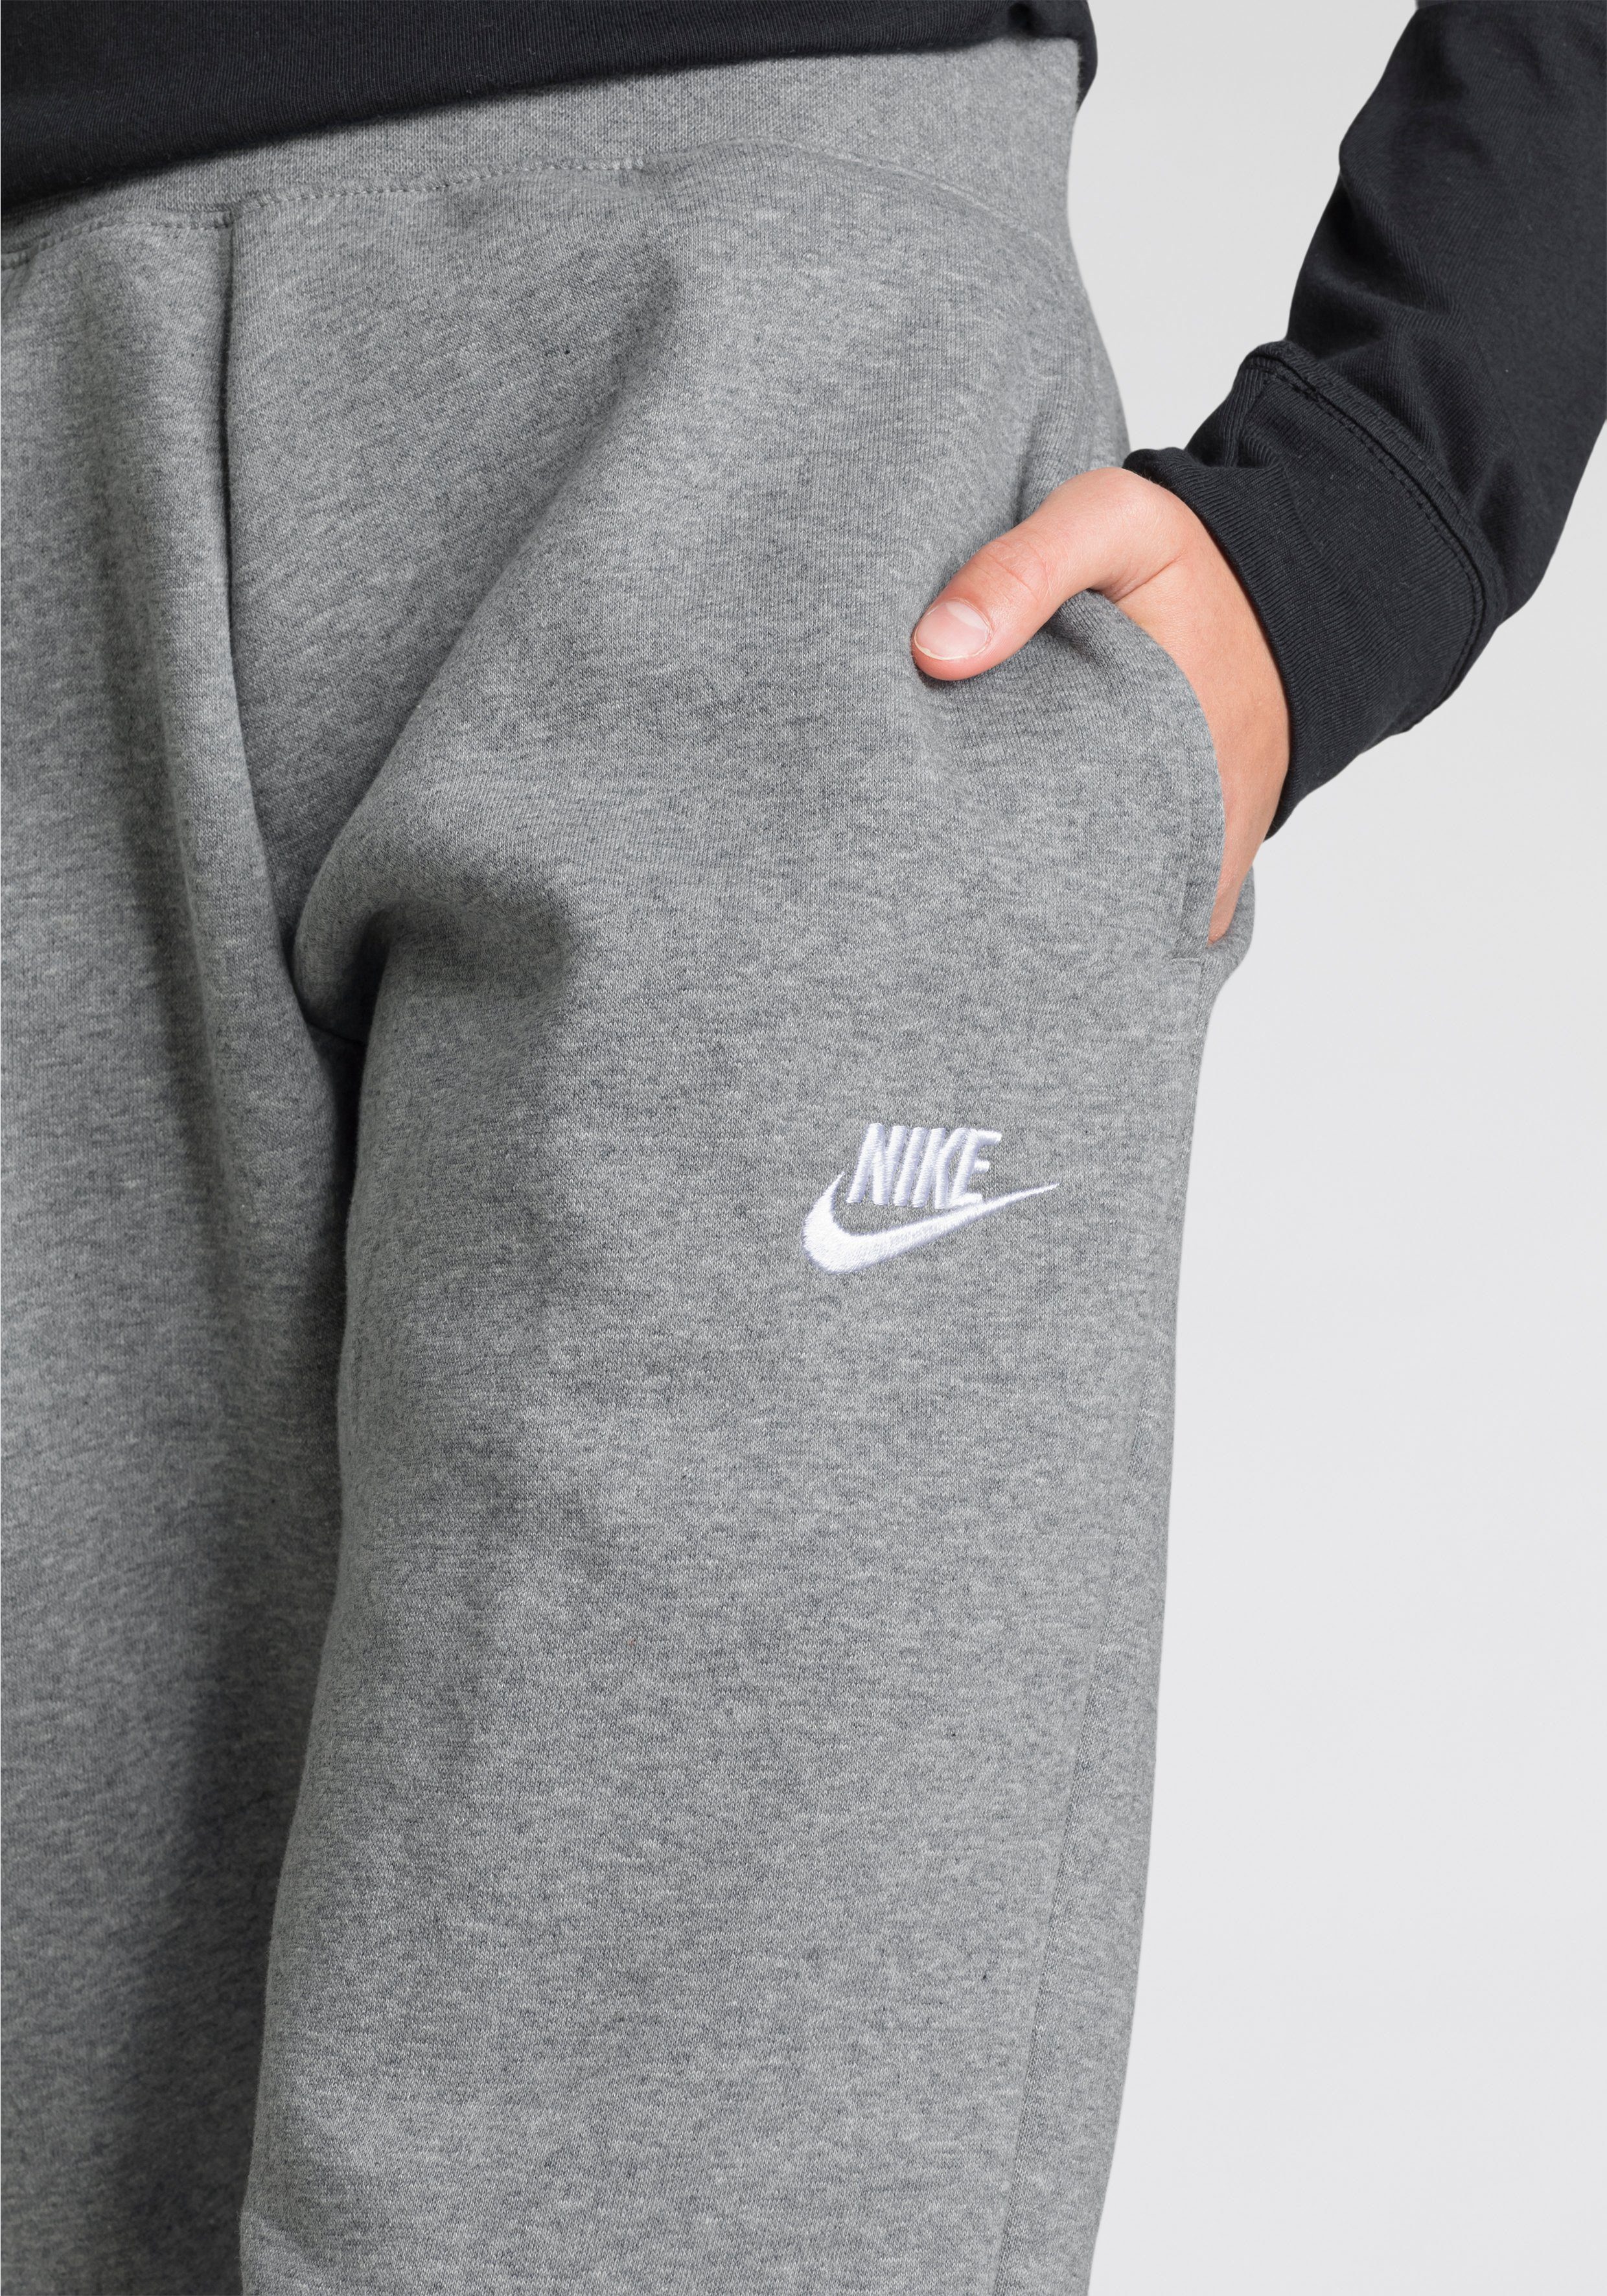 Big Club Sportswear (Girls) grau-meliert Jogginghose Nike Kids' Fleece Pants